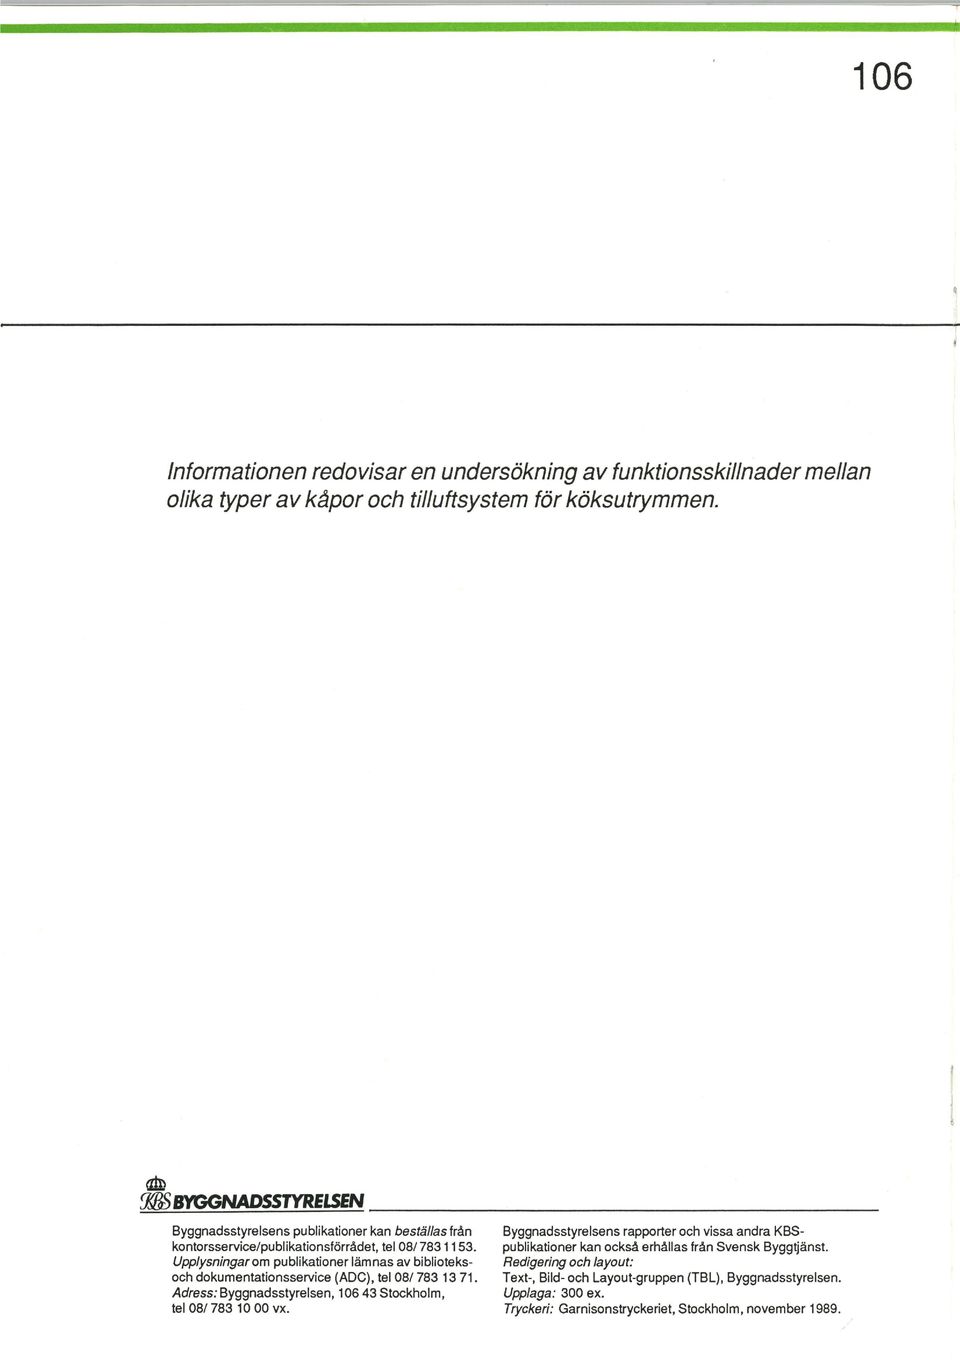 Upplysningar om publikationer lämnas av biblioteksoch dokumentationsservice (ADC), tel 08/ 783 13 71. Adress: Byggnadsstyrelsen, 106 43 Stockholm, tel 08/ 783 10 00 vx.